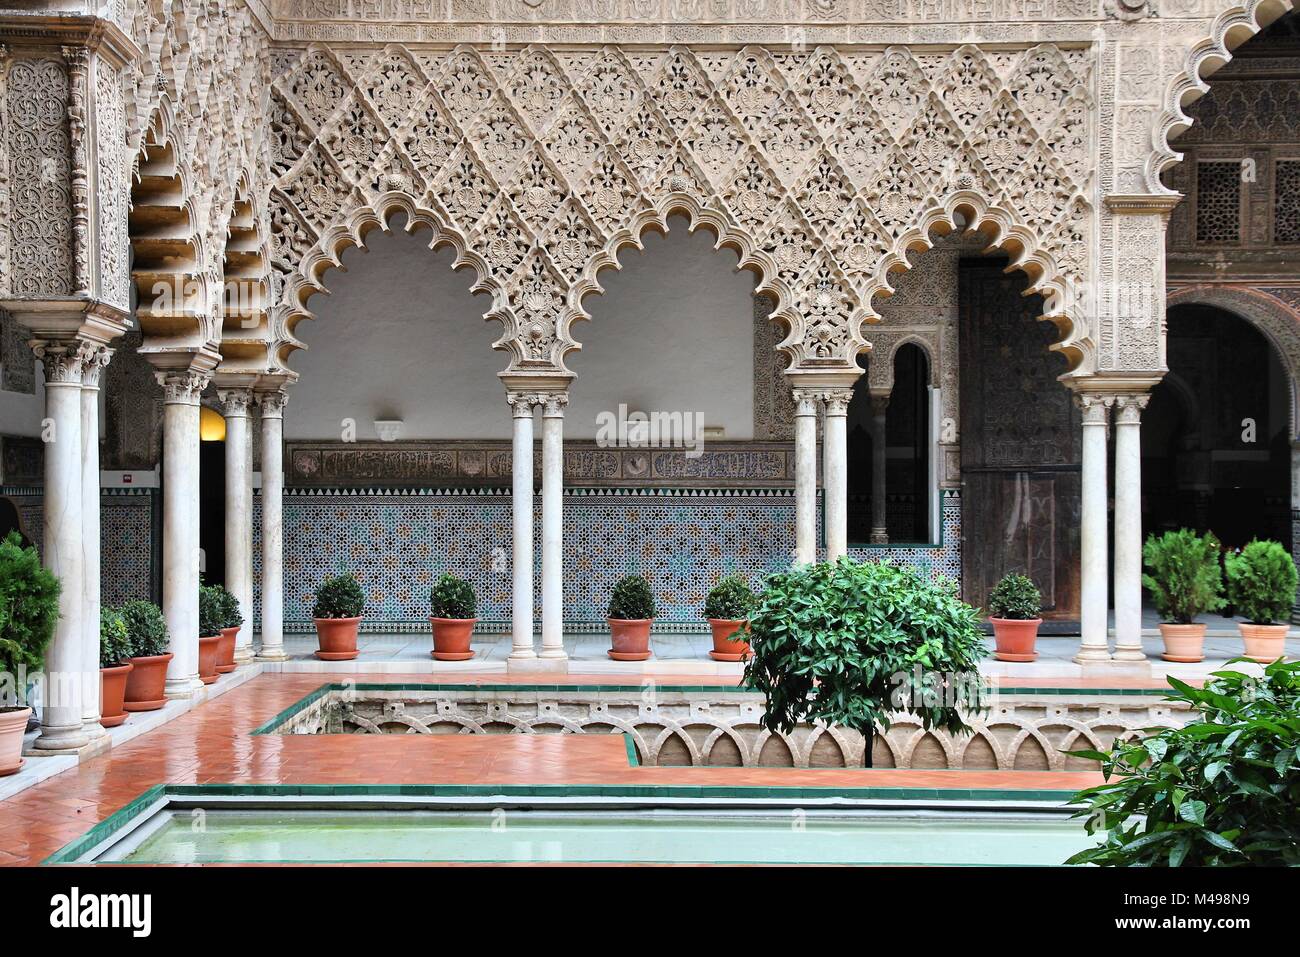 Sevilla, Spanien - königliche Alcazar, berühmten UNESCO-Weltkulturerbe. Maurischer Architektur. Stockfoto